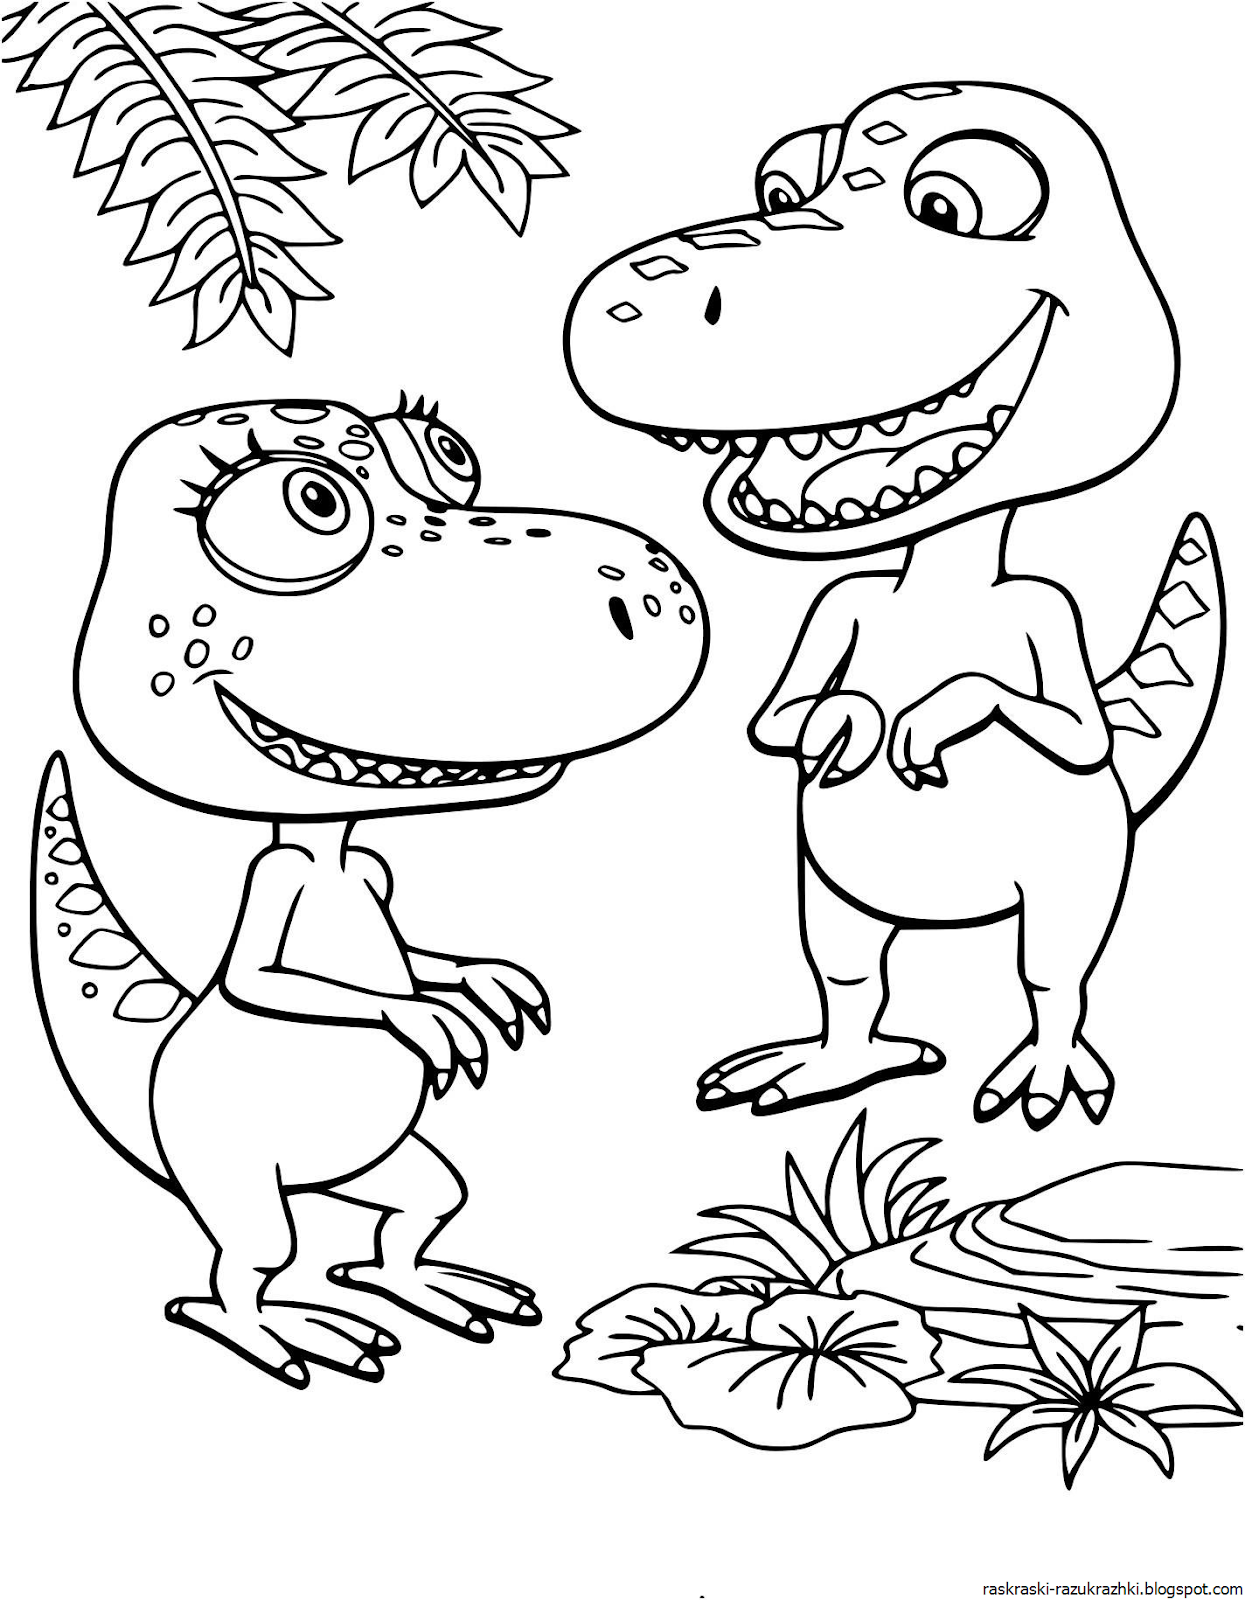 Раскраска динозавр формат а4. Бадди поезд динозавров раскраска. Динозавры / раскраска. Раскраски для мальчиков динозавры.